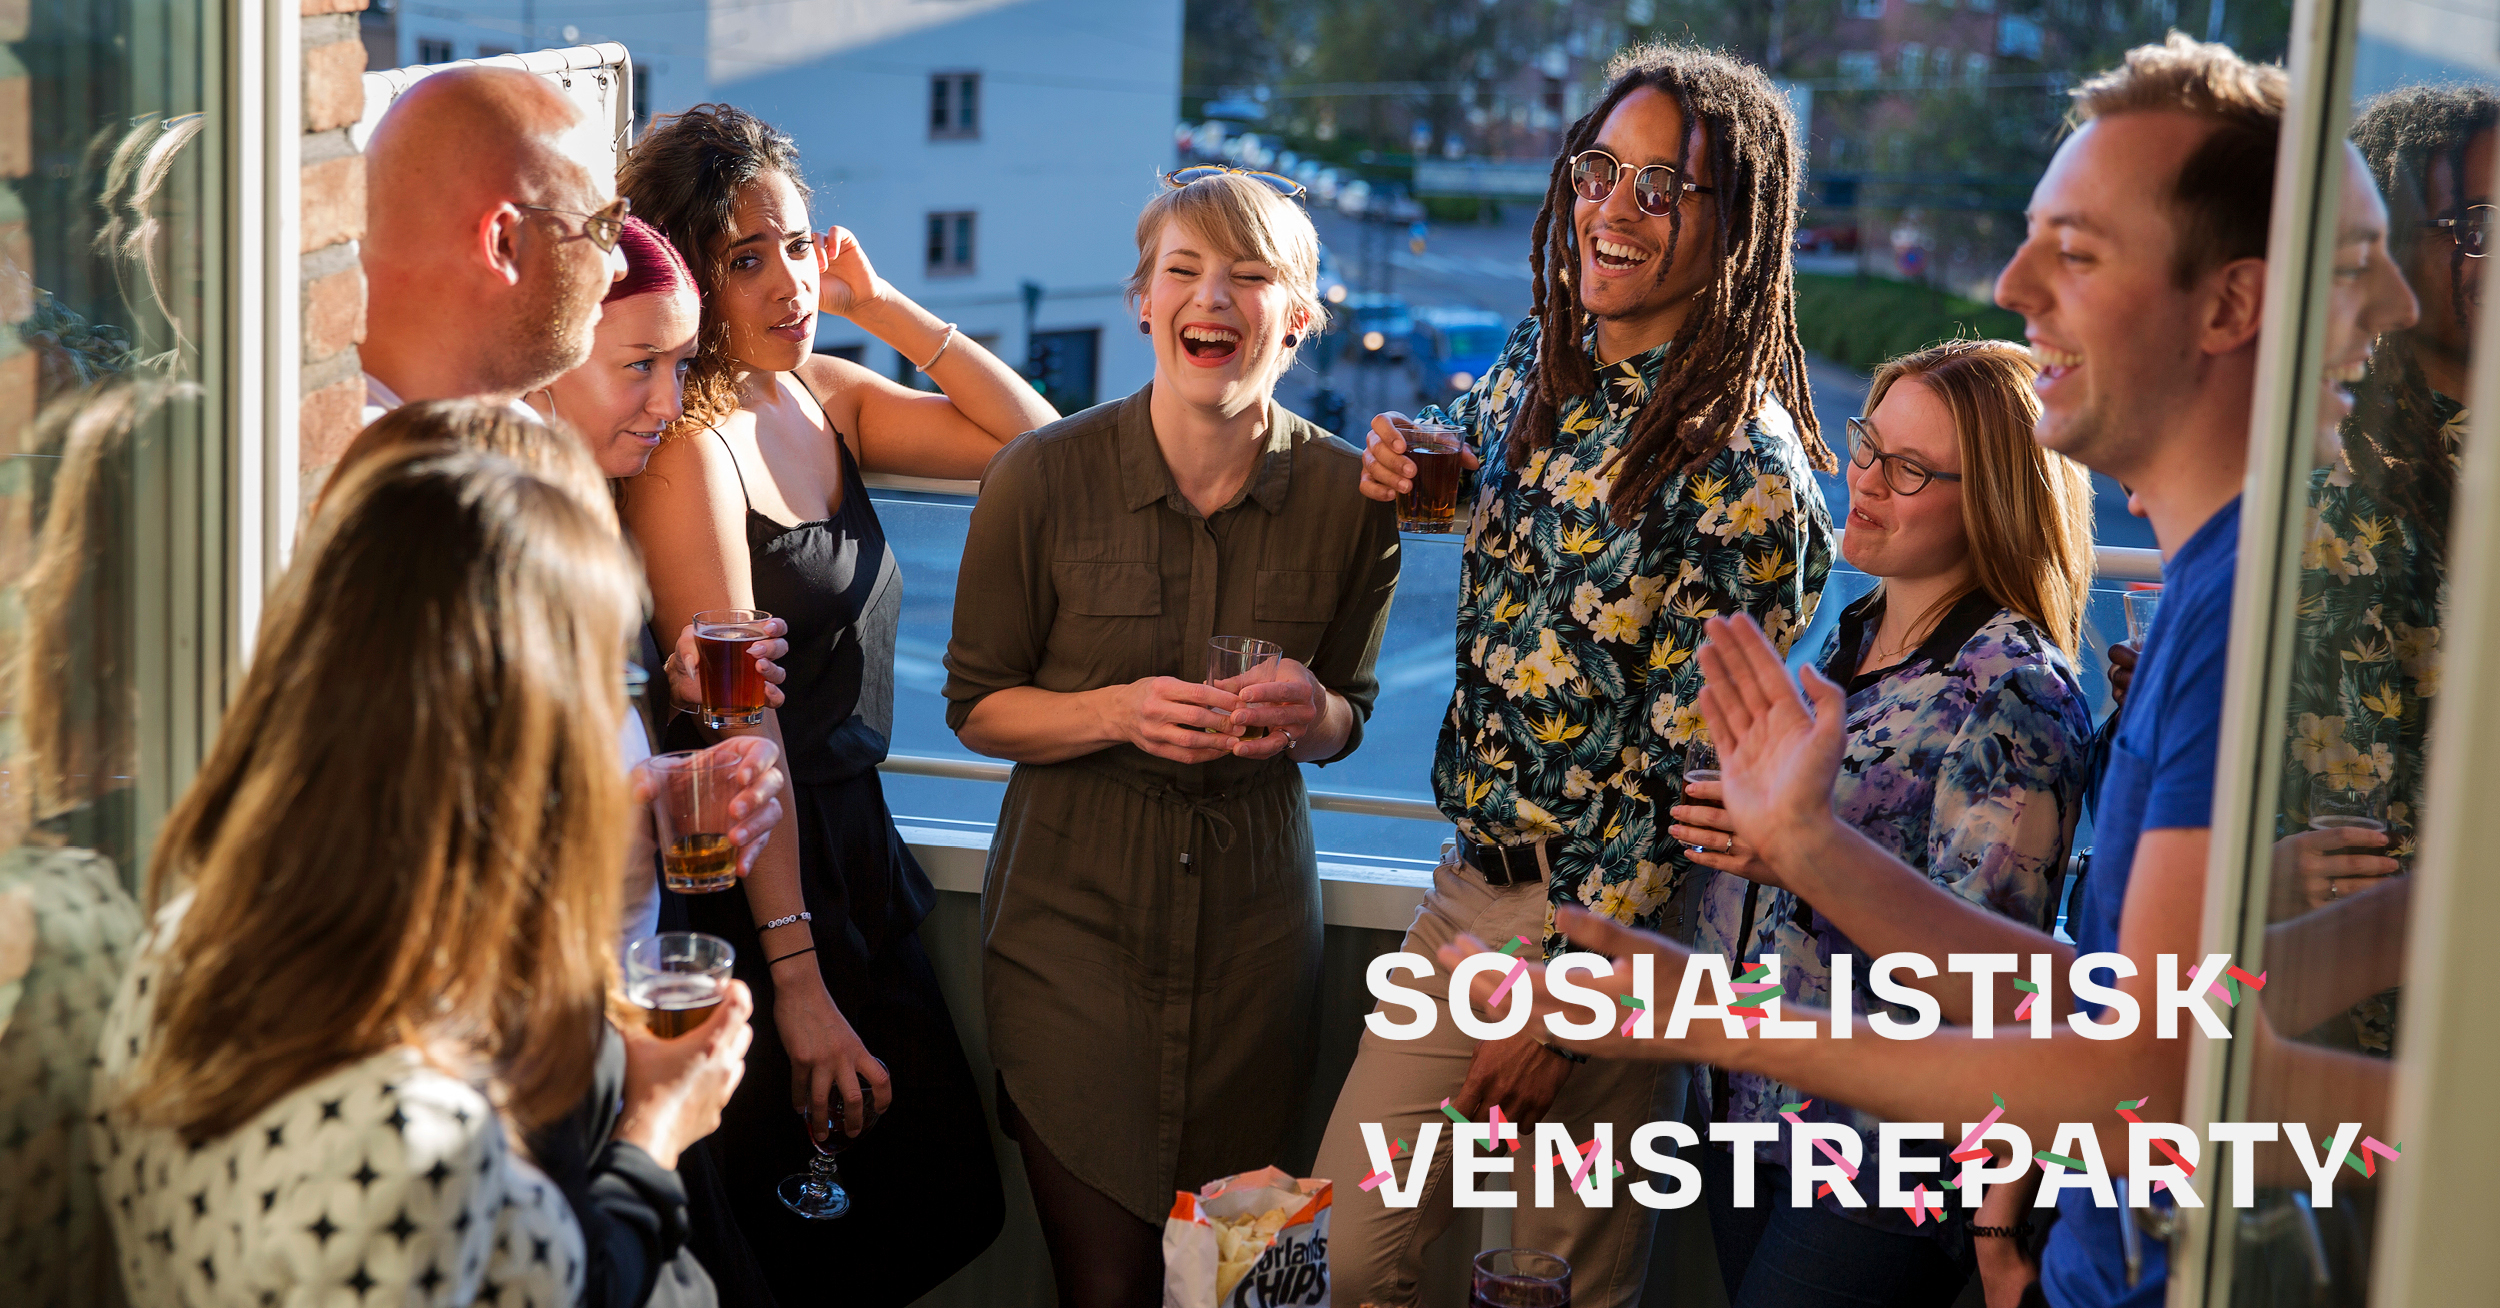 Sosialistisk Venstreparty - Kari Elisabeth Kaski på fest med en gruppe folk. tekst over foto